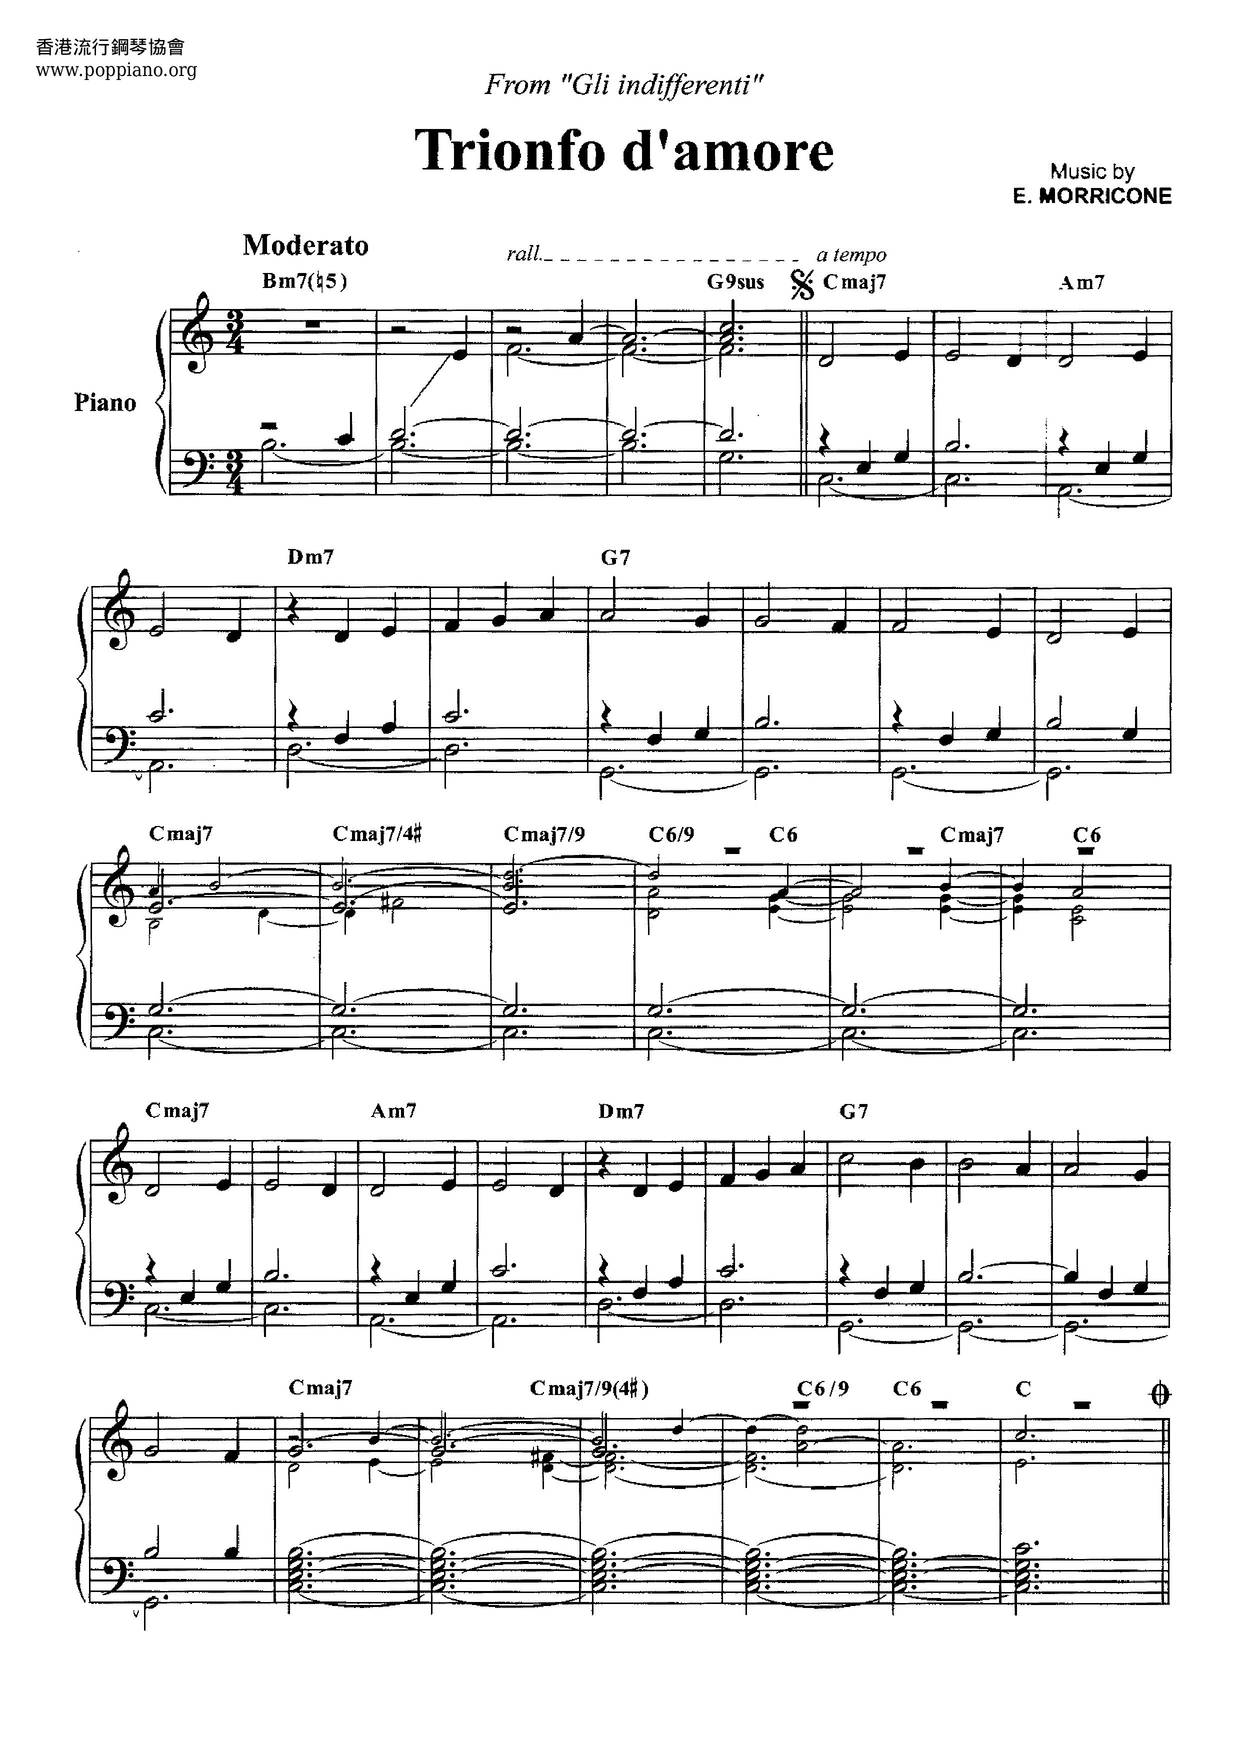 Gli Indifferenti - Trionfo D'amore Score